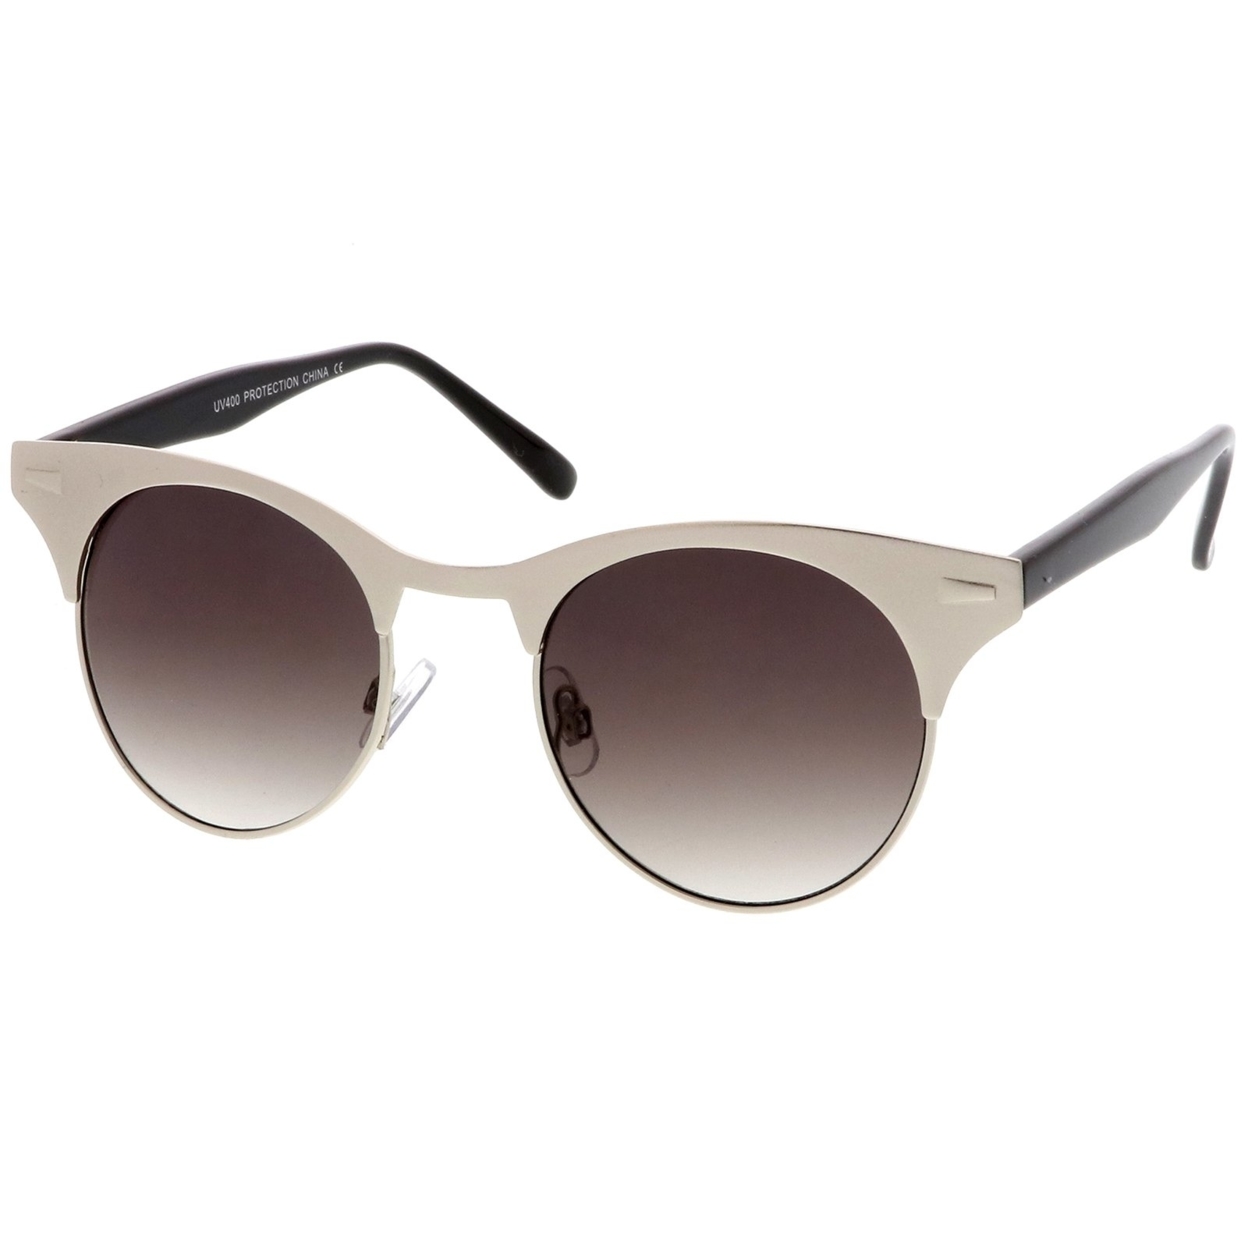 Women's Matte Finish Horn Rimmed Round Flat Lens Cat Eye Sunglasses 49mm - Gold-White / Brown Gradient